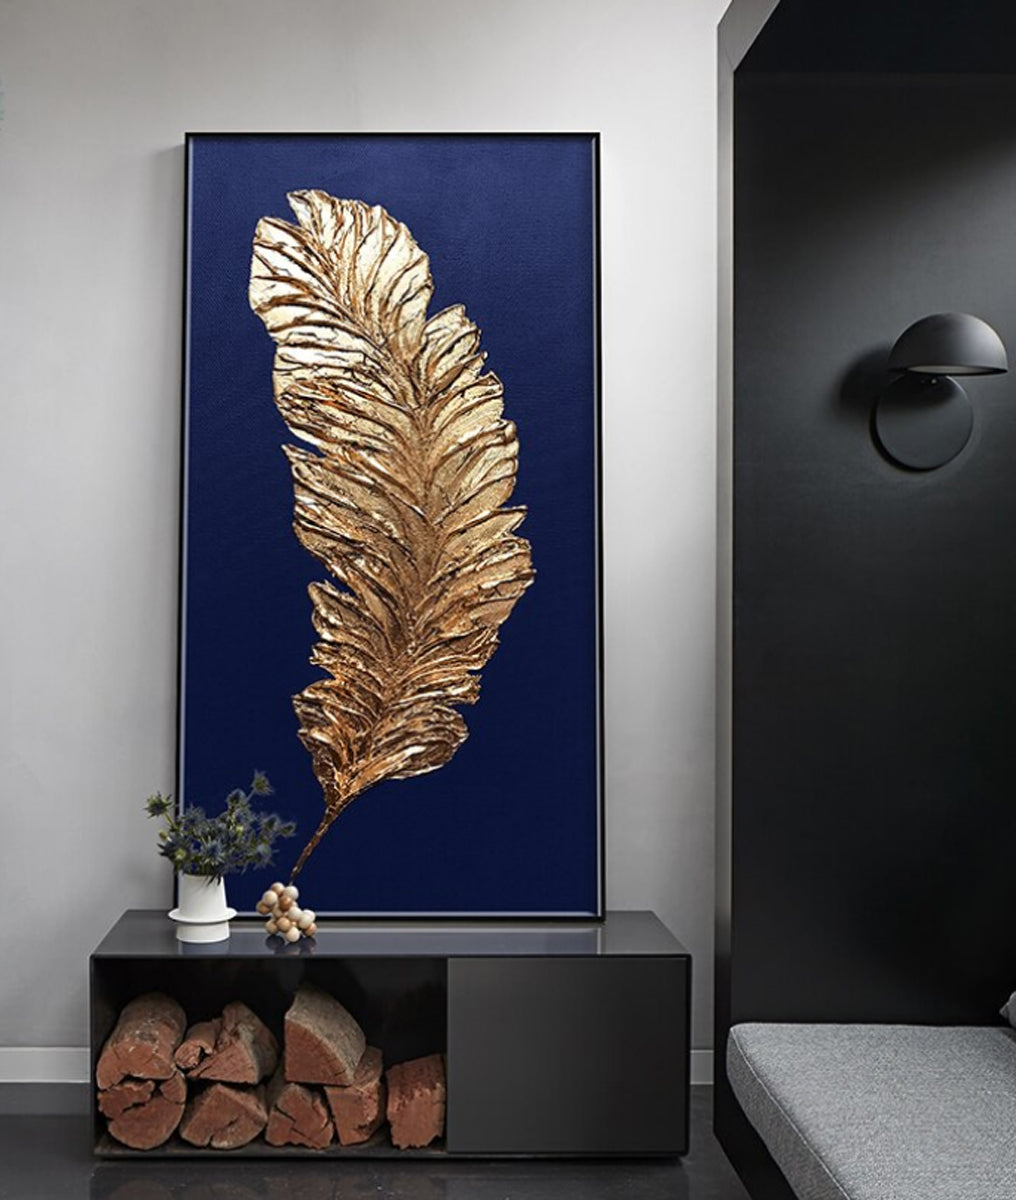 TPFLiving Leinwandbild Kunstdruck - Nordic Art Goldene Feder auf blauem oder grauem Hintergrund - OHNE Rahmen - Bilder Wohnzimmer - Modell TPFL-LW-68-MB